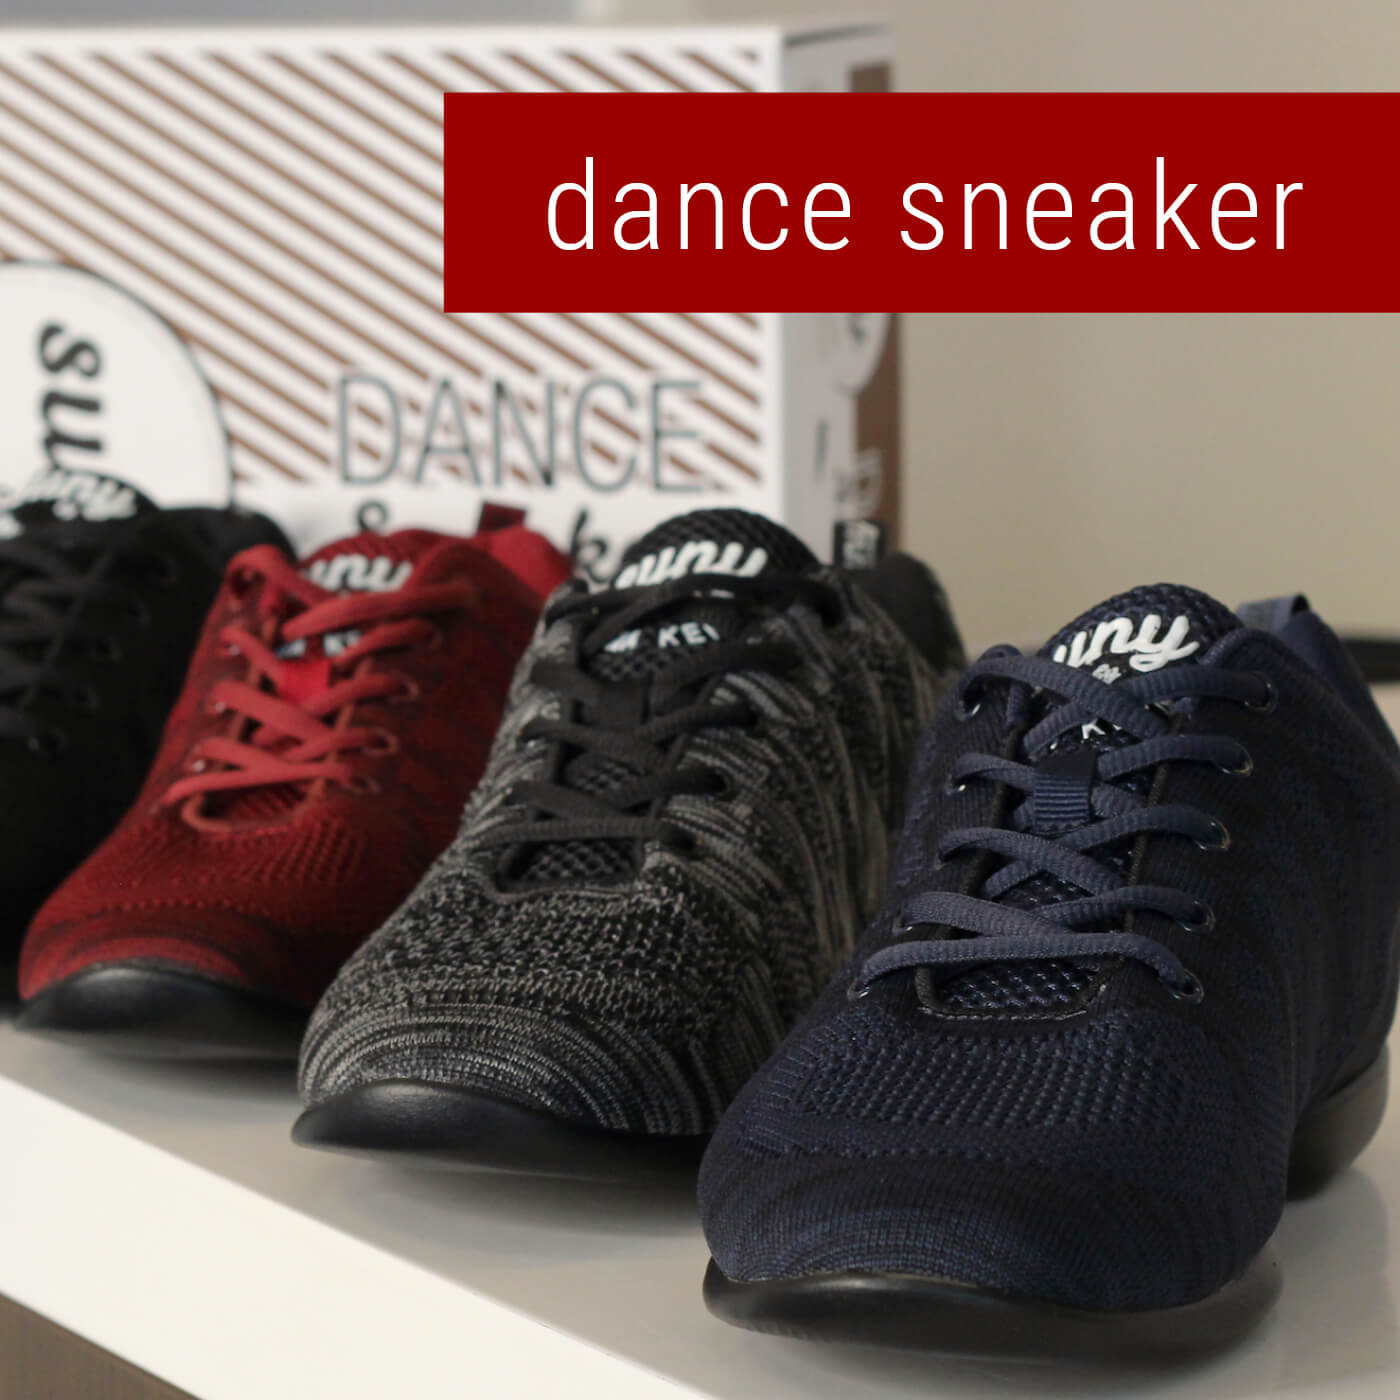 dance sneaker gents - 43